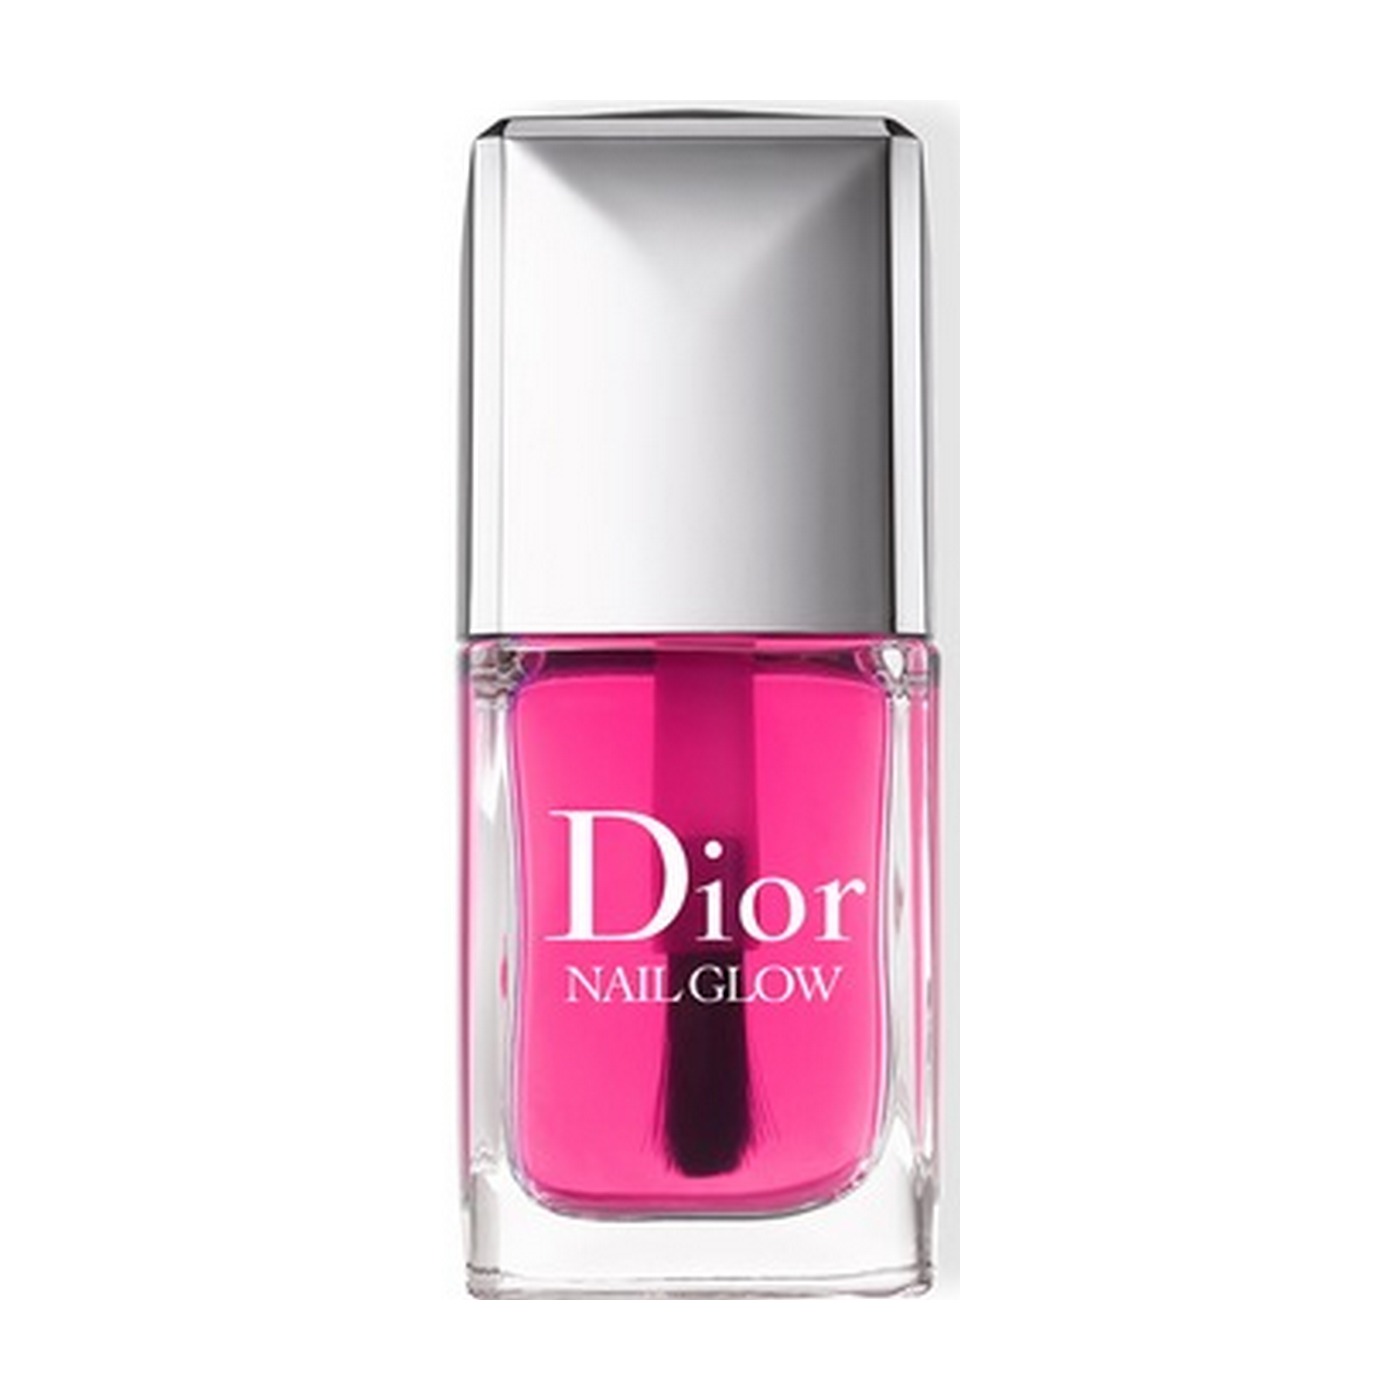 Dior Лак Nail Glow Эффект французского маникюра 10мл купить в интернет-мага...